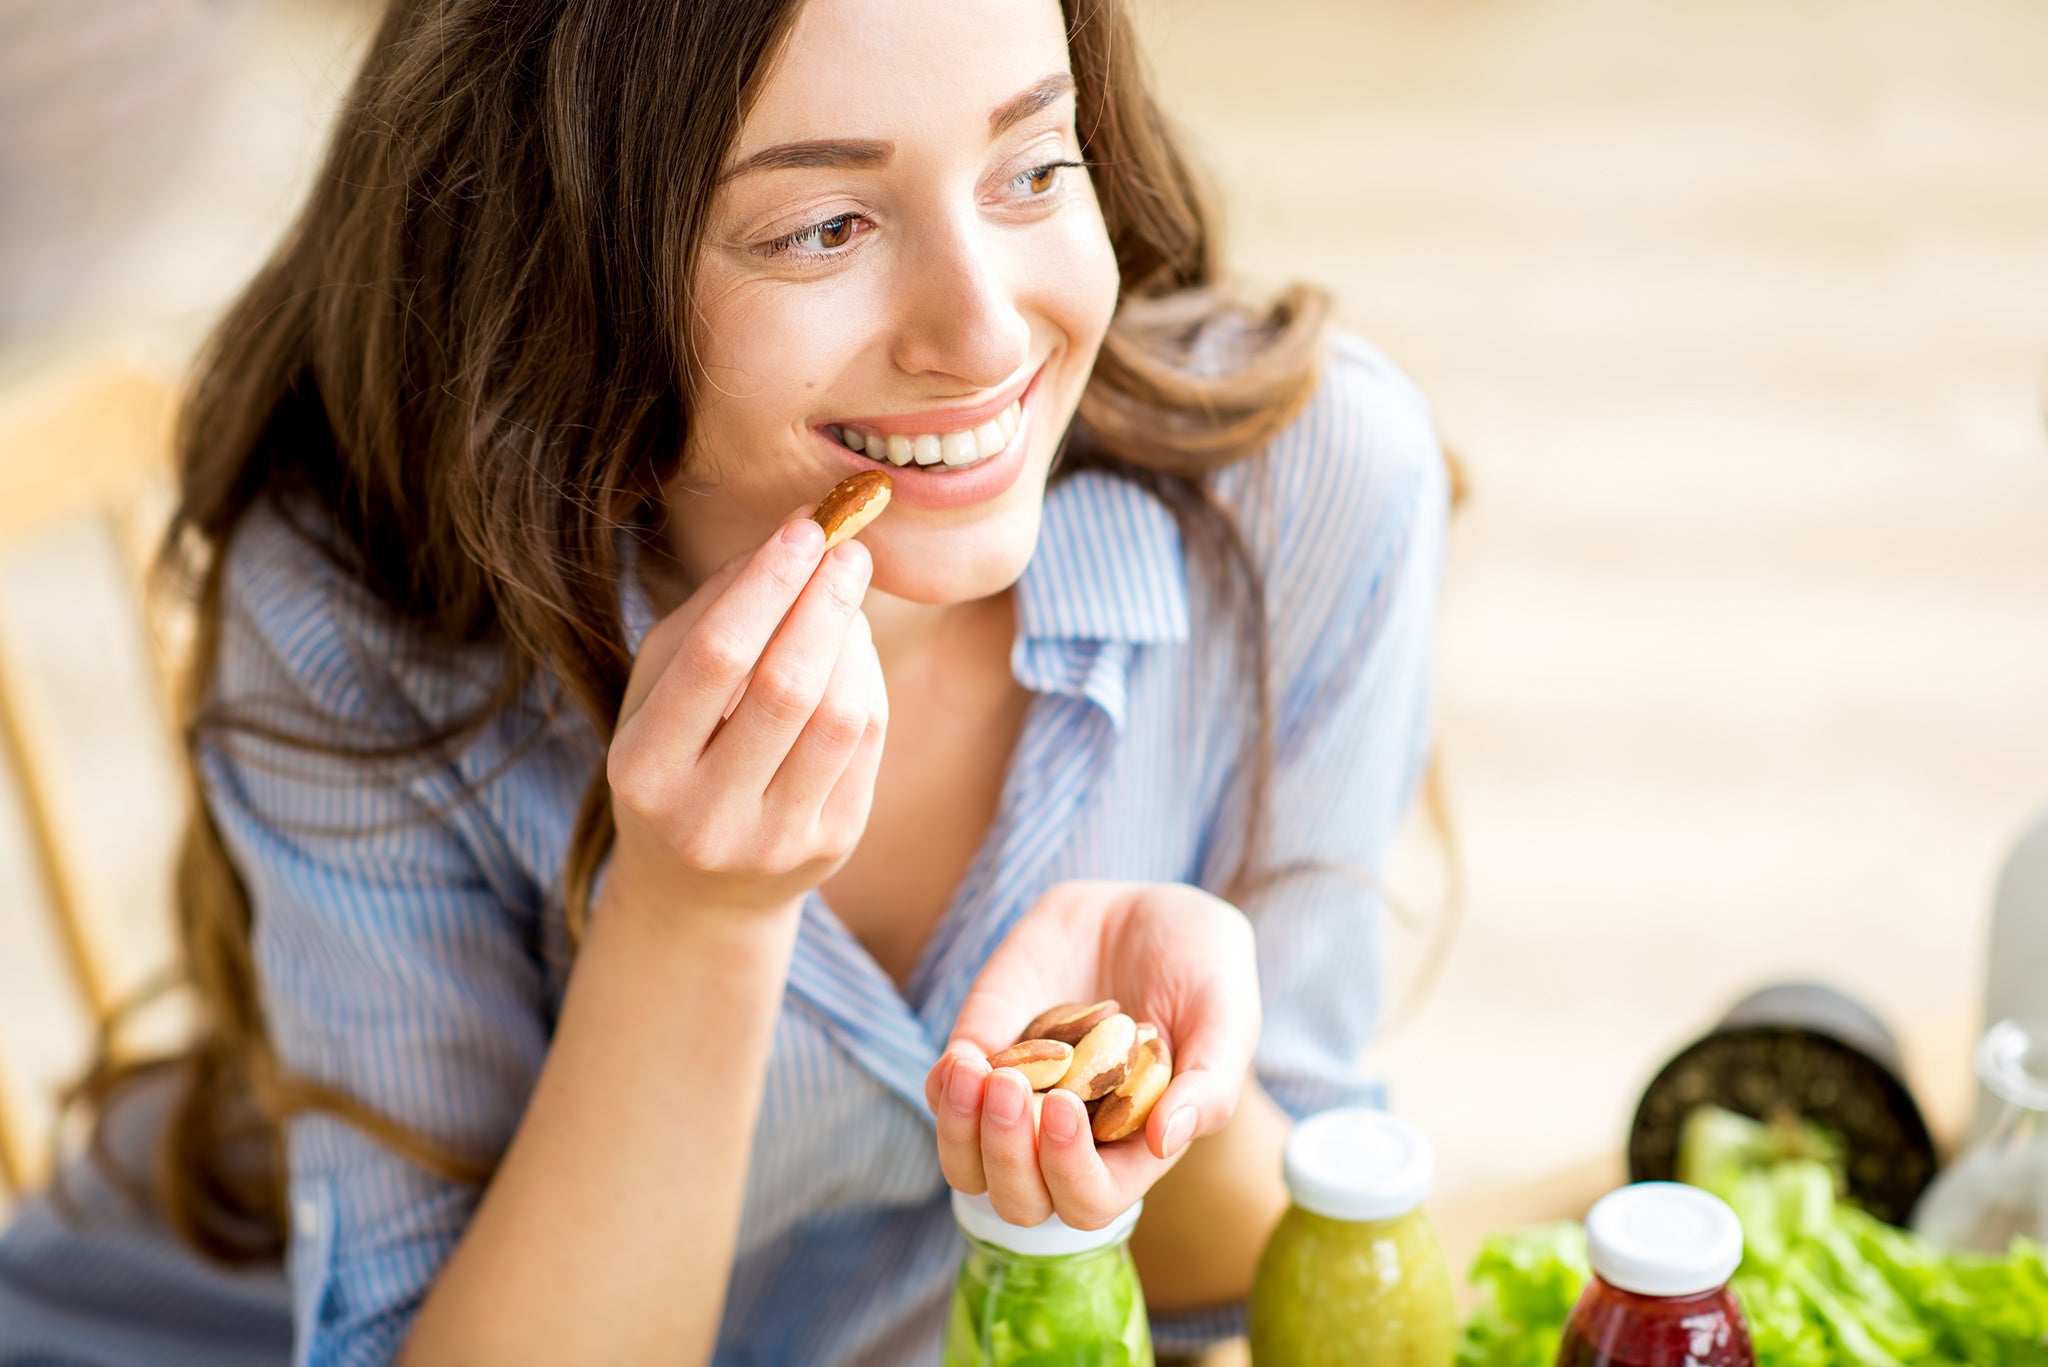 Vill du undvika tandköttsinflammation? Här är tips på kostval som kan hjälpa!